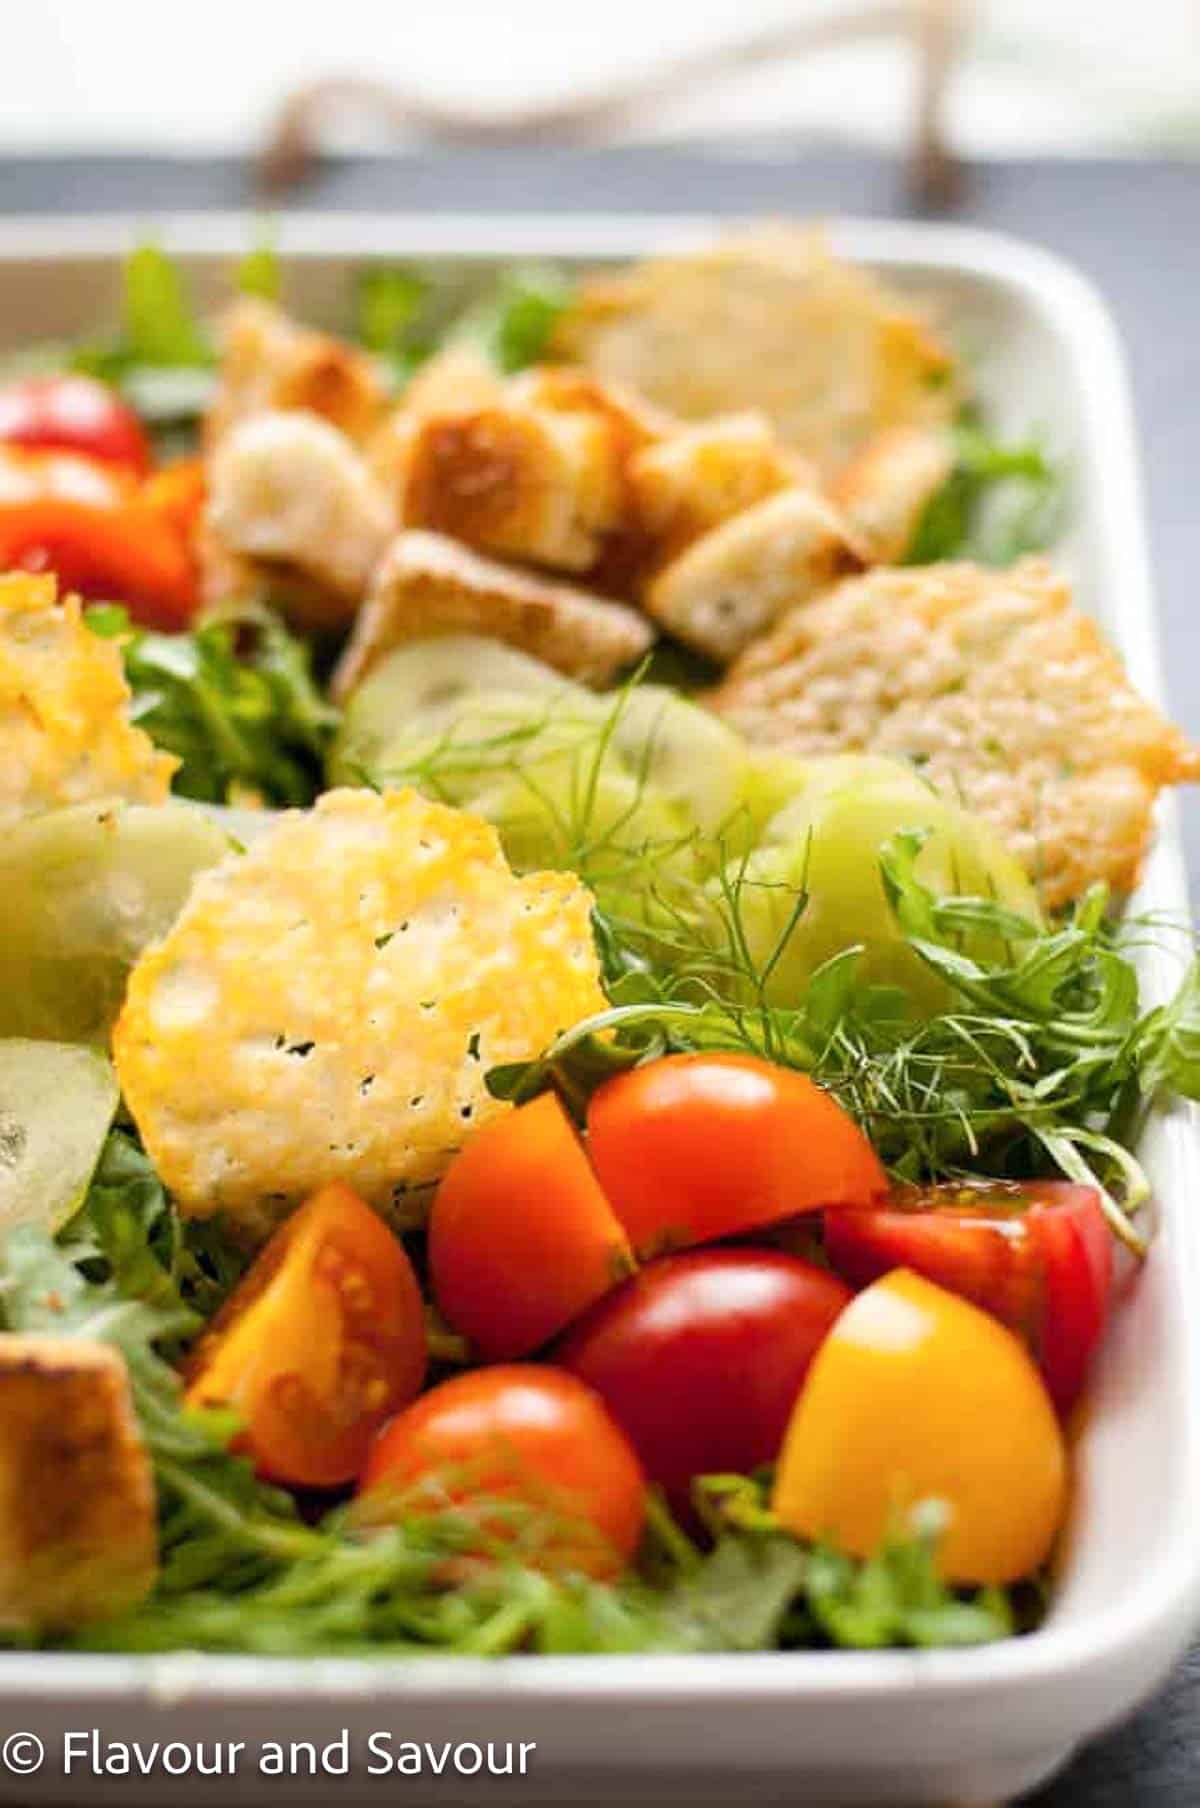 Parmesan crisps on a tossed green salad.